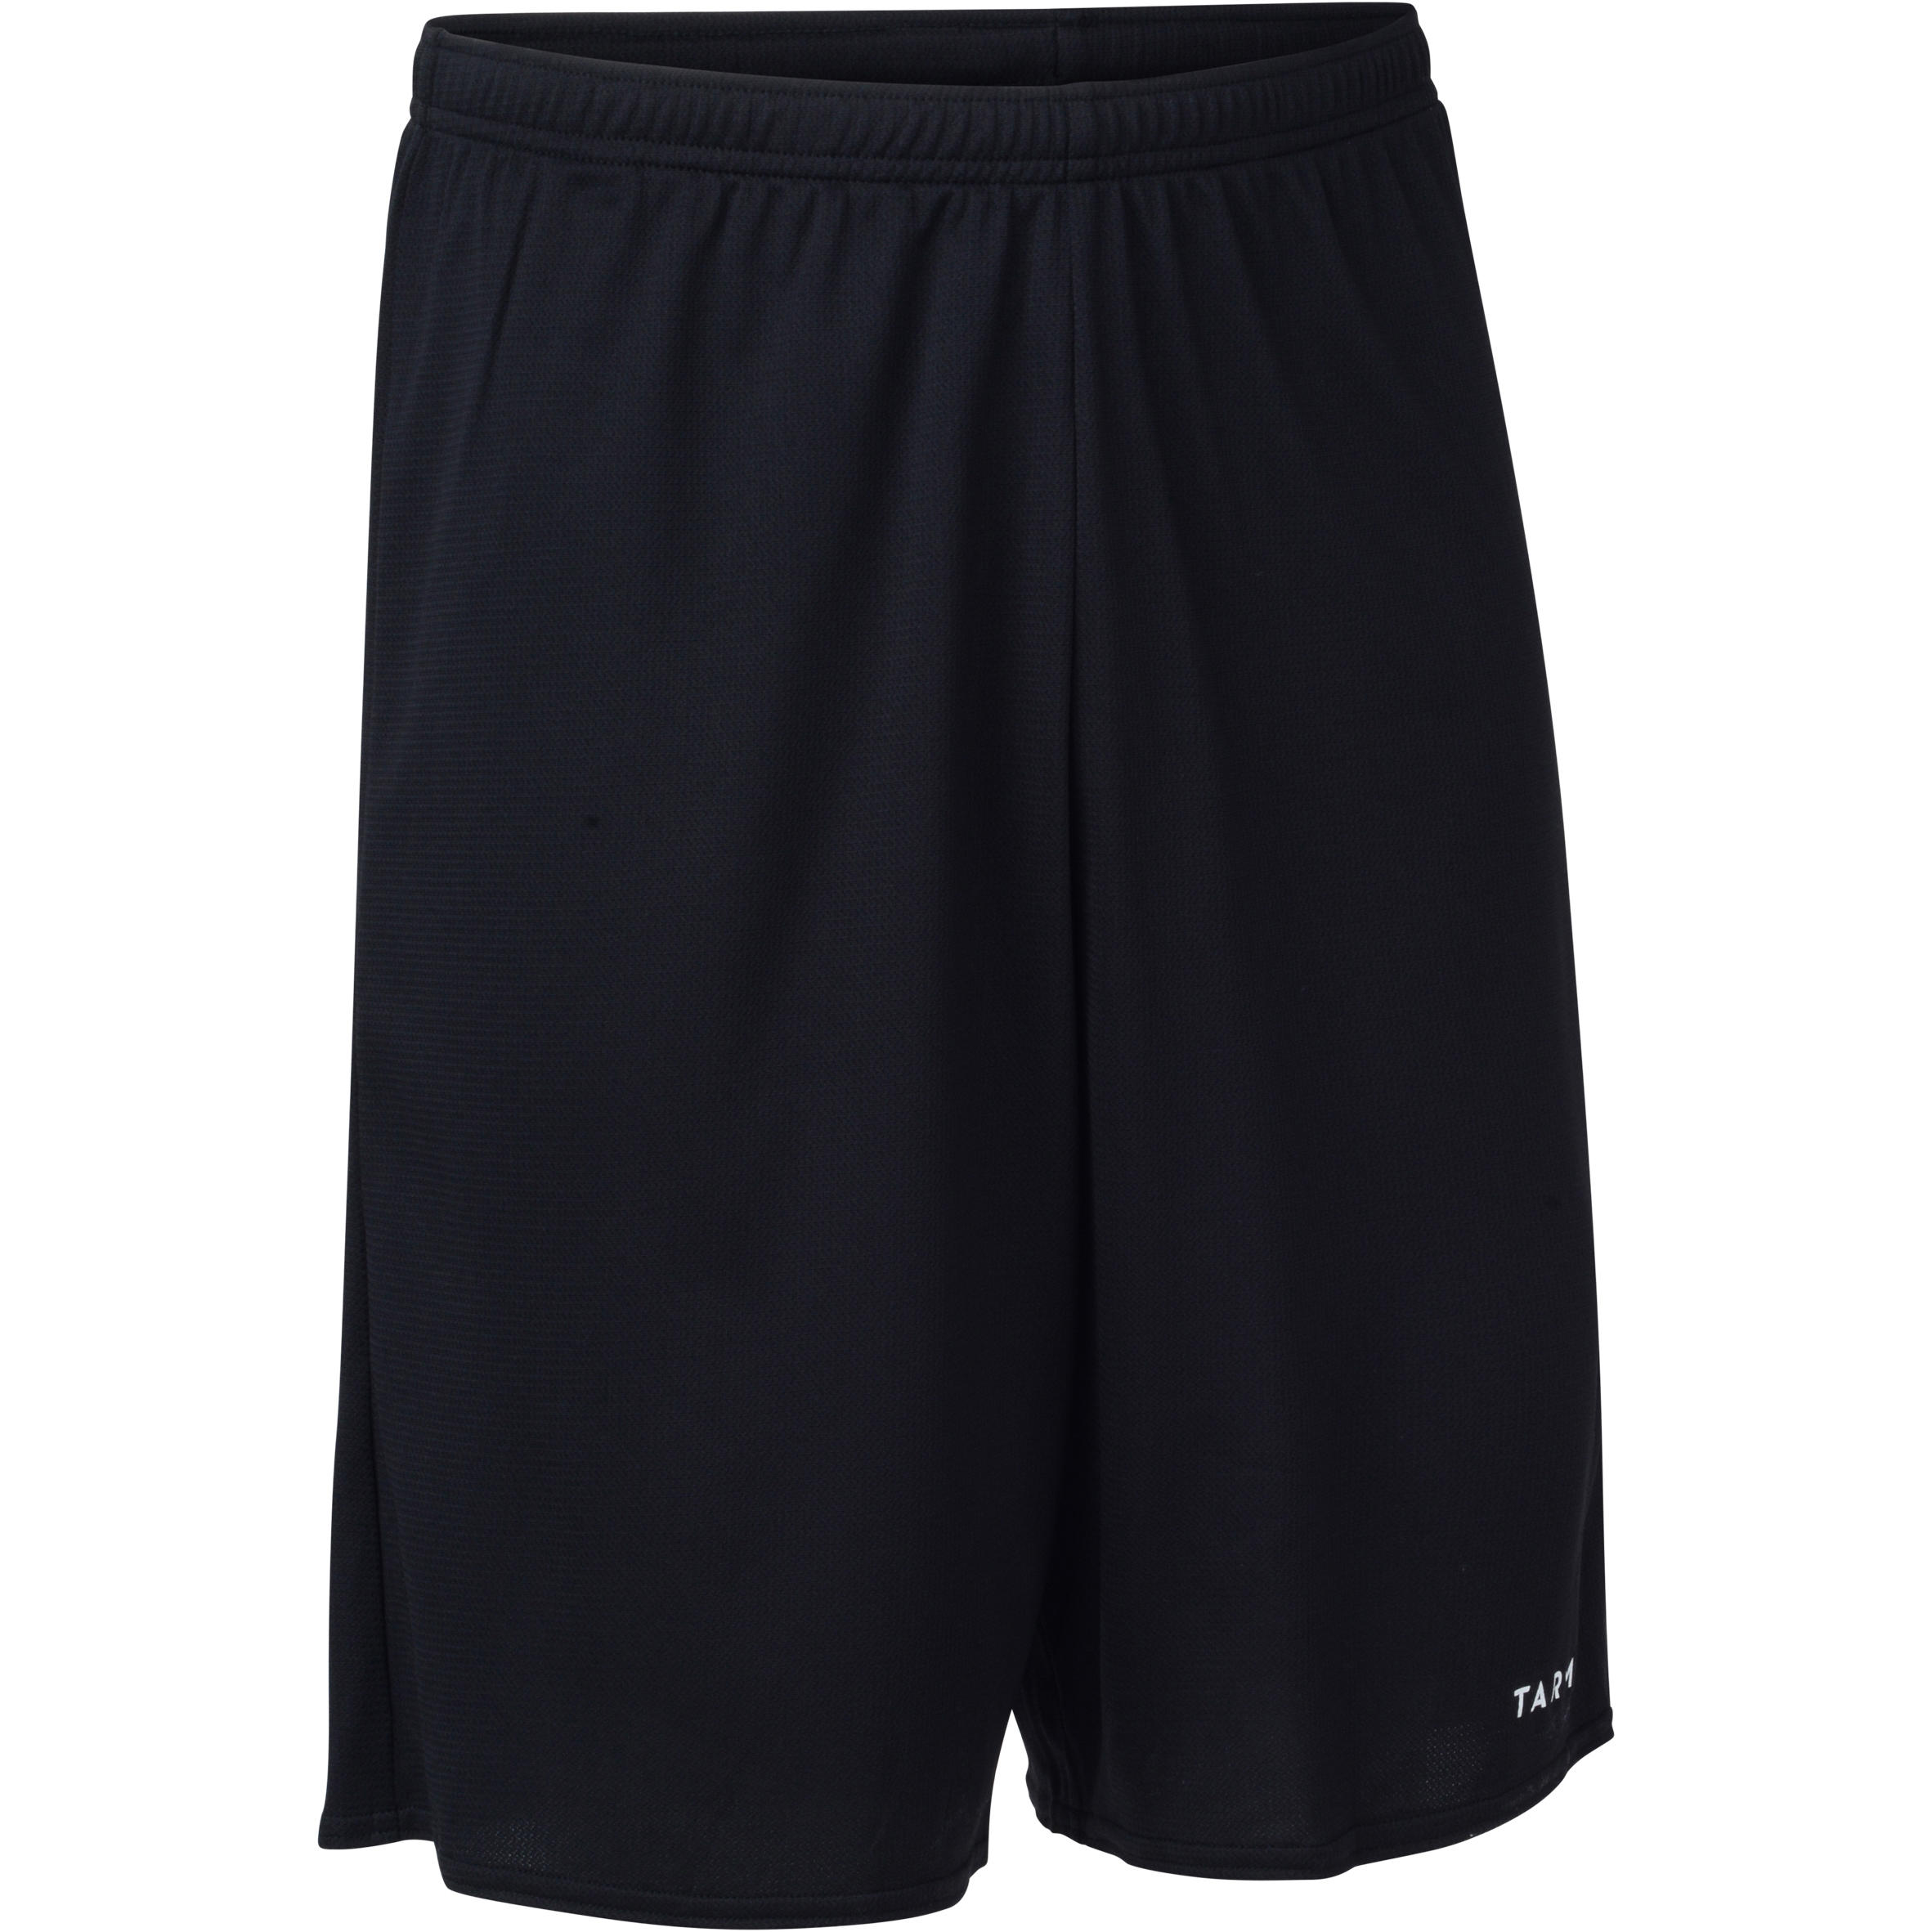 mens basketball shorts